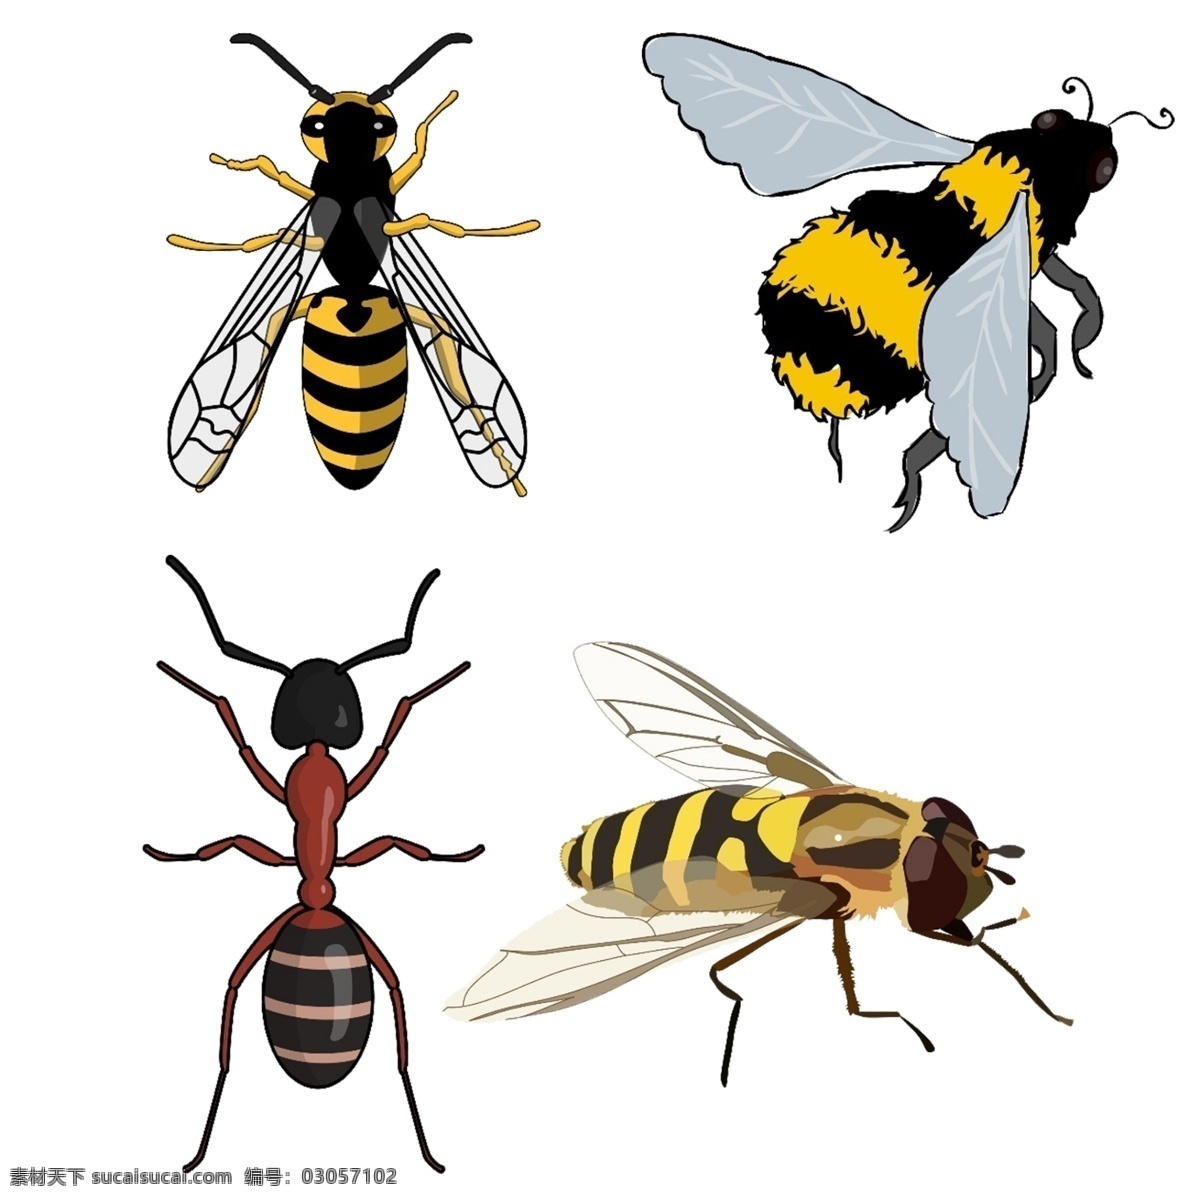 卡通蜜蜂 黄蜂 工蜂 大黄蜂 翅膀 透明翅膀 生物 蚂蚁 昆虫 动画蜜蜂 动物 勤劳的小蜜蜂 小蜜蜂 蜂蜜 蜂巢 生物世界